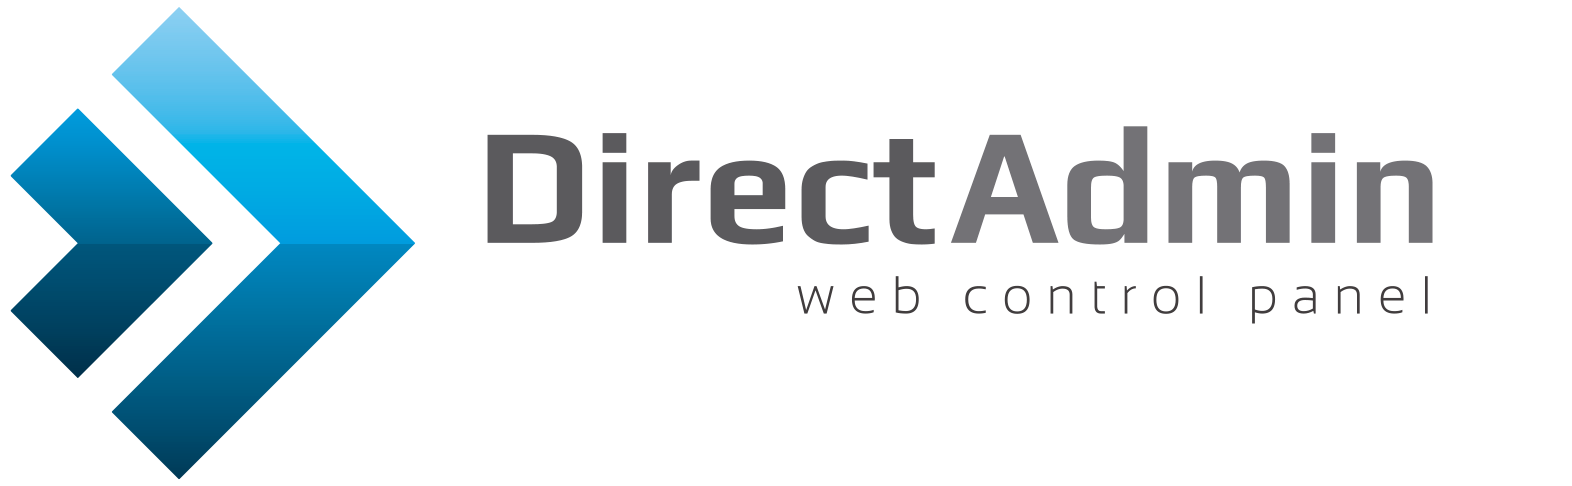 DirectAdmin logo